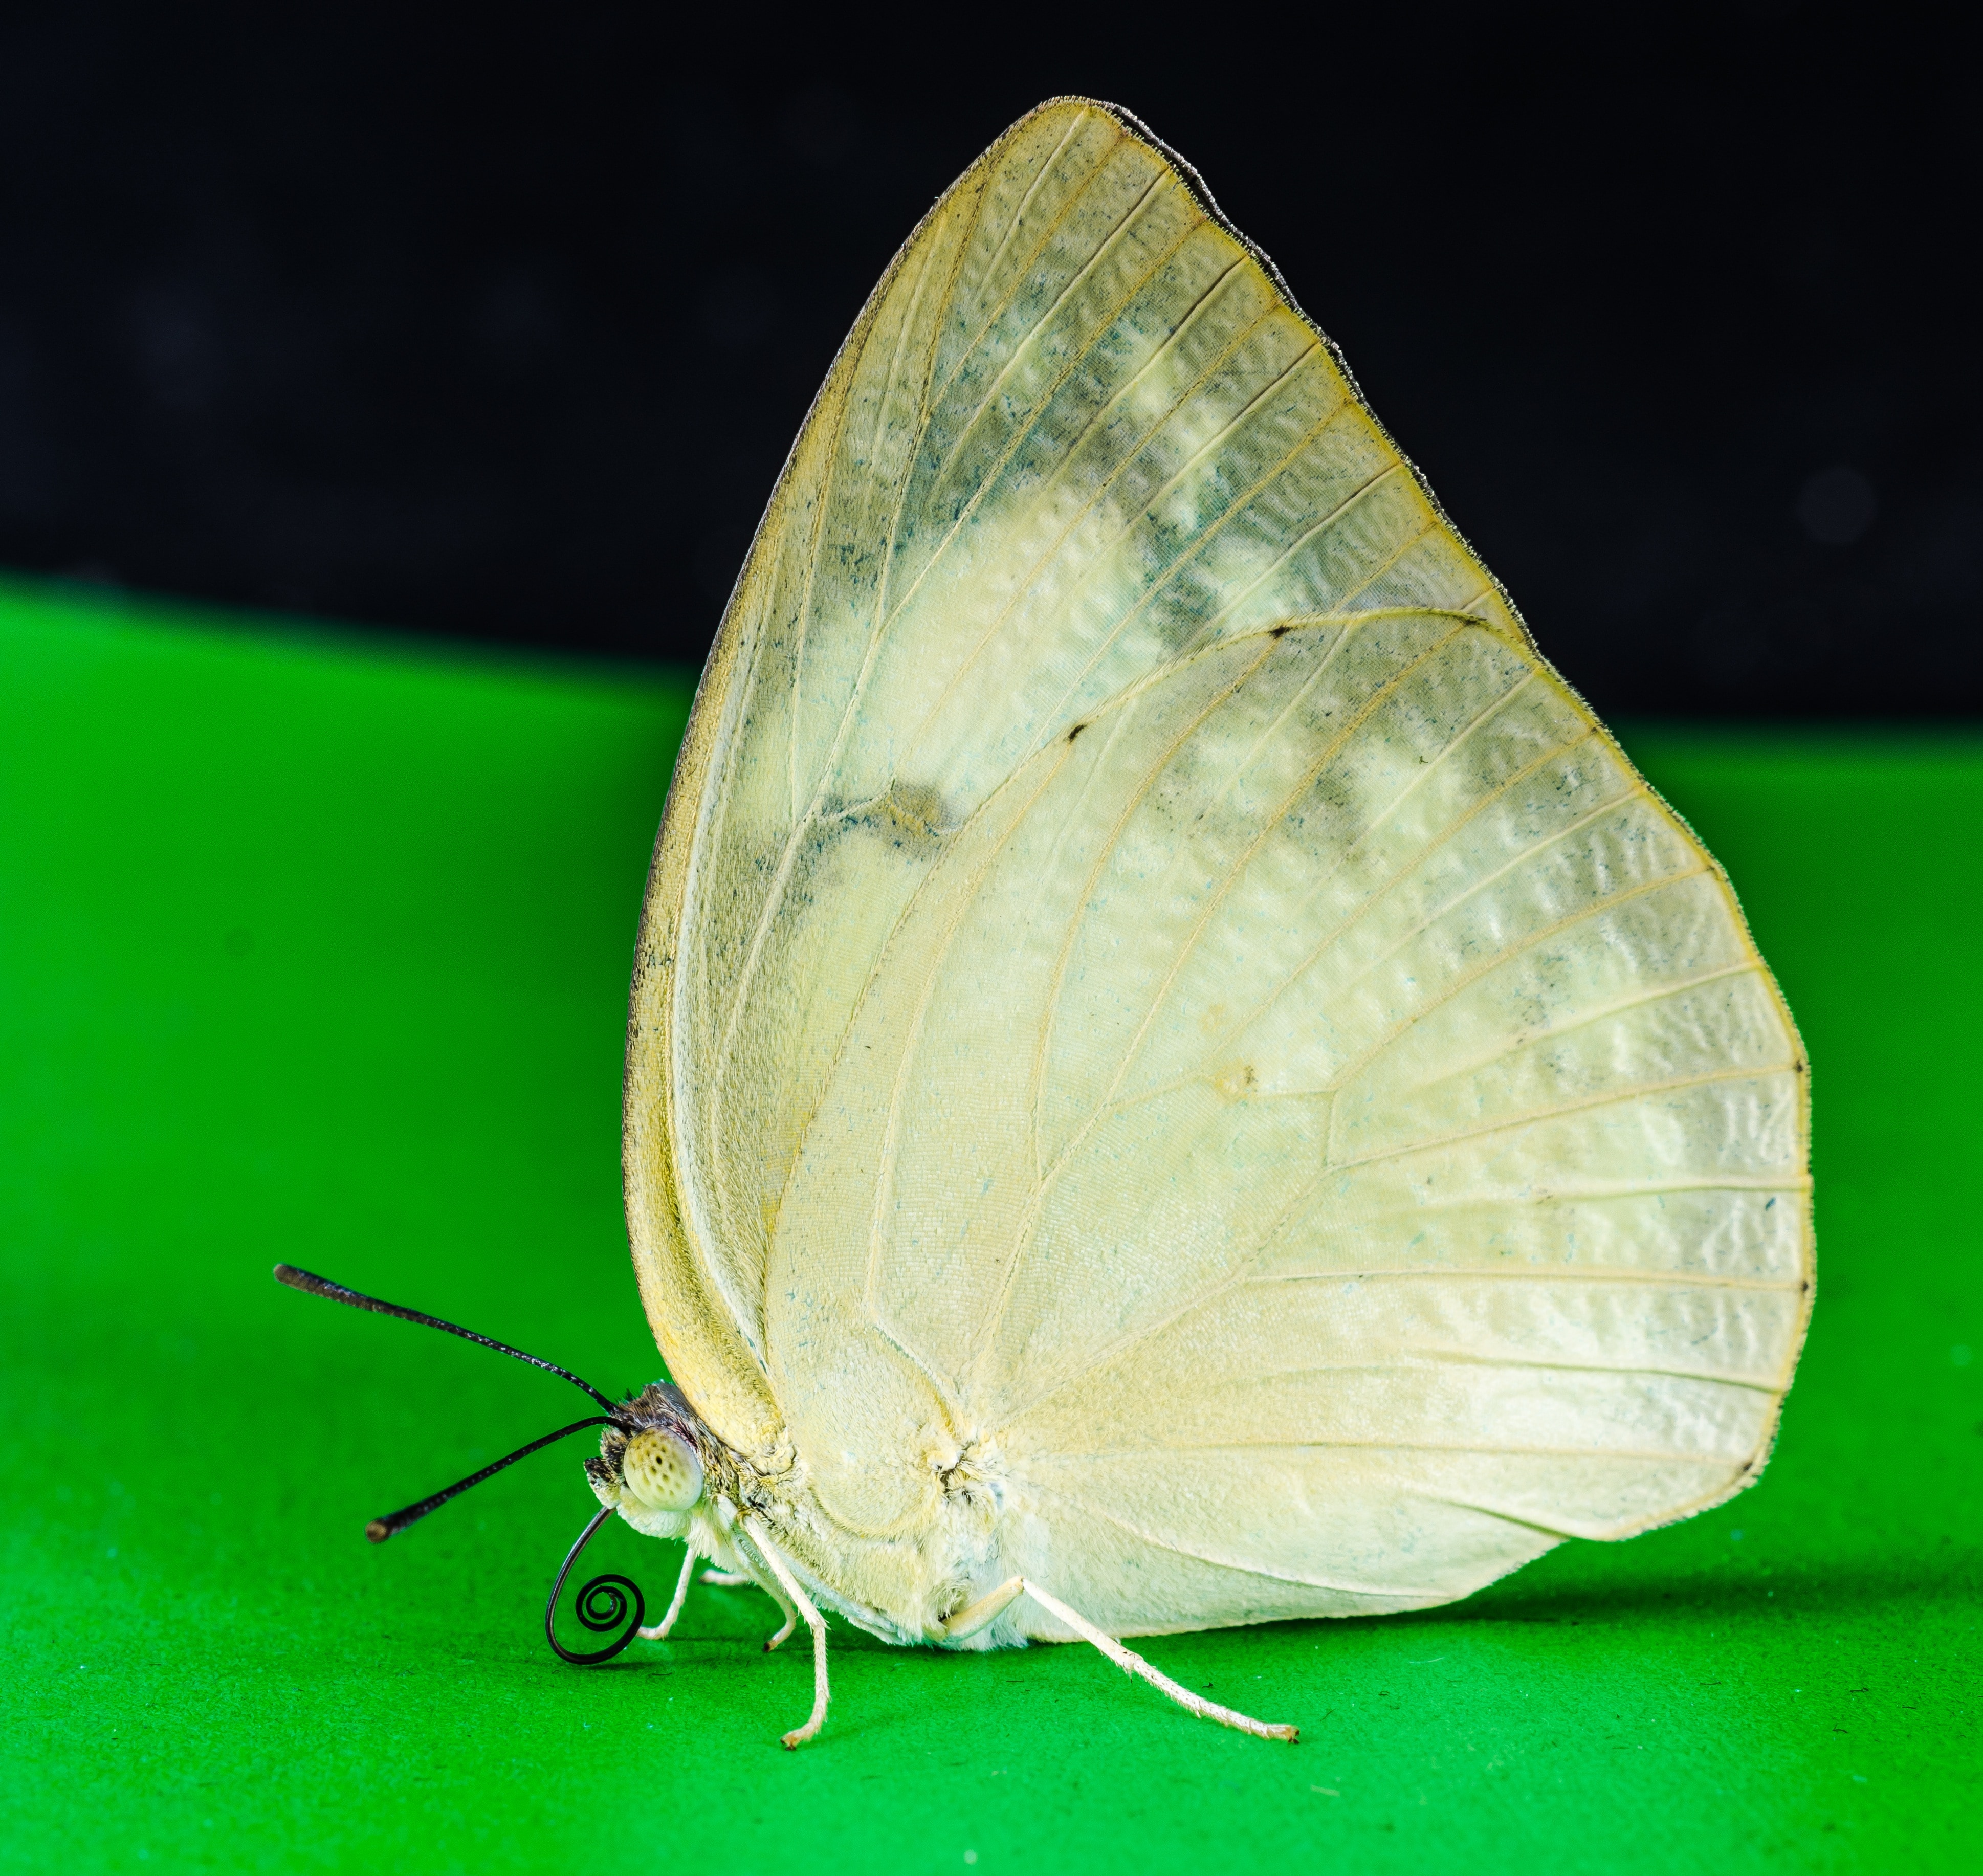 beige butterfly